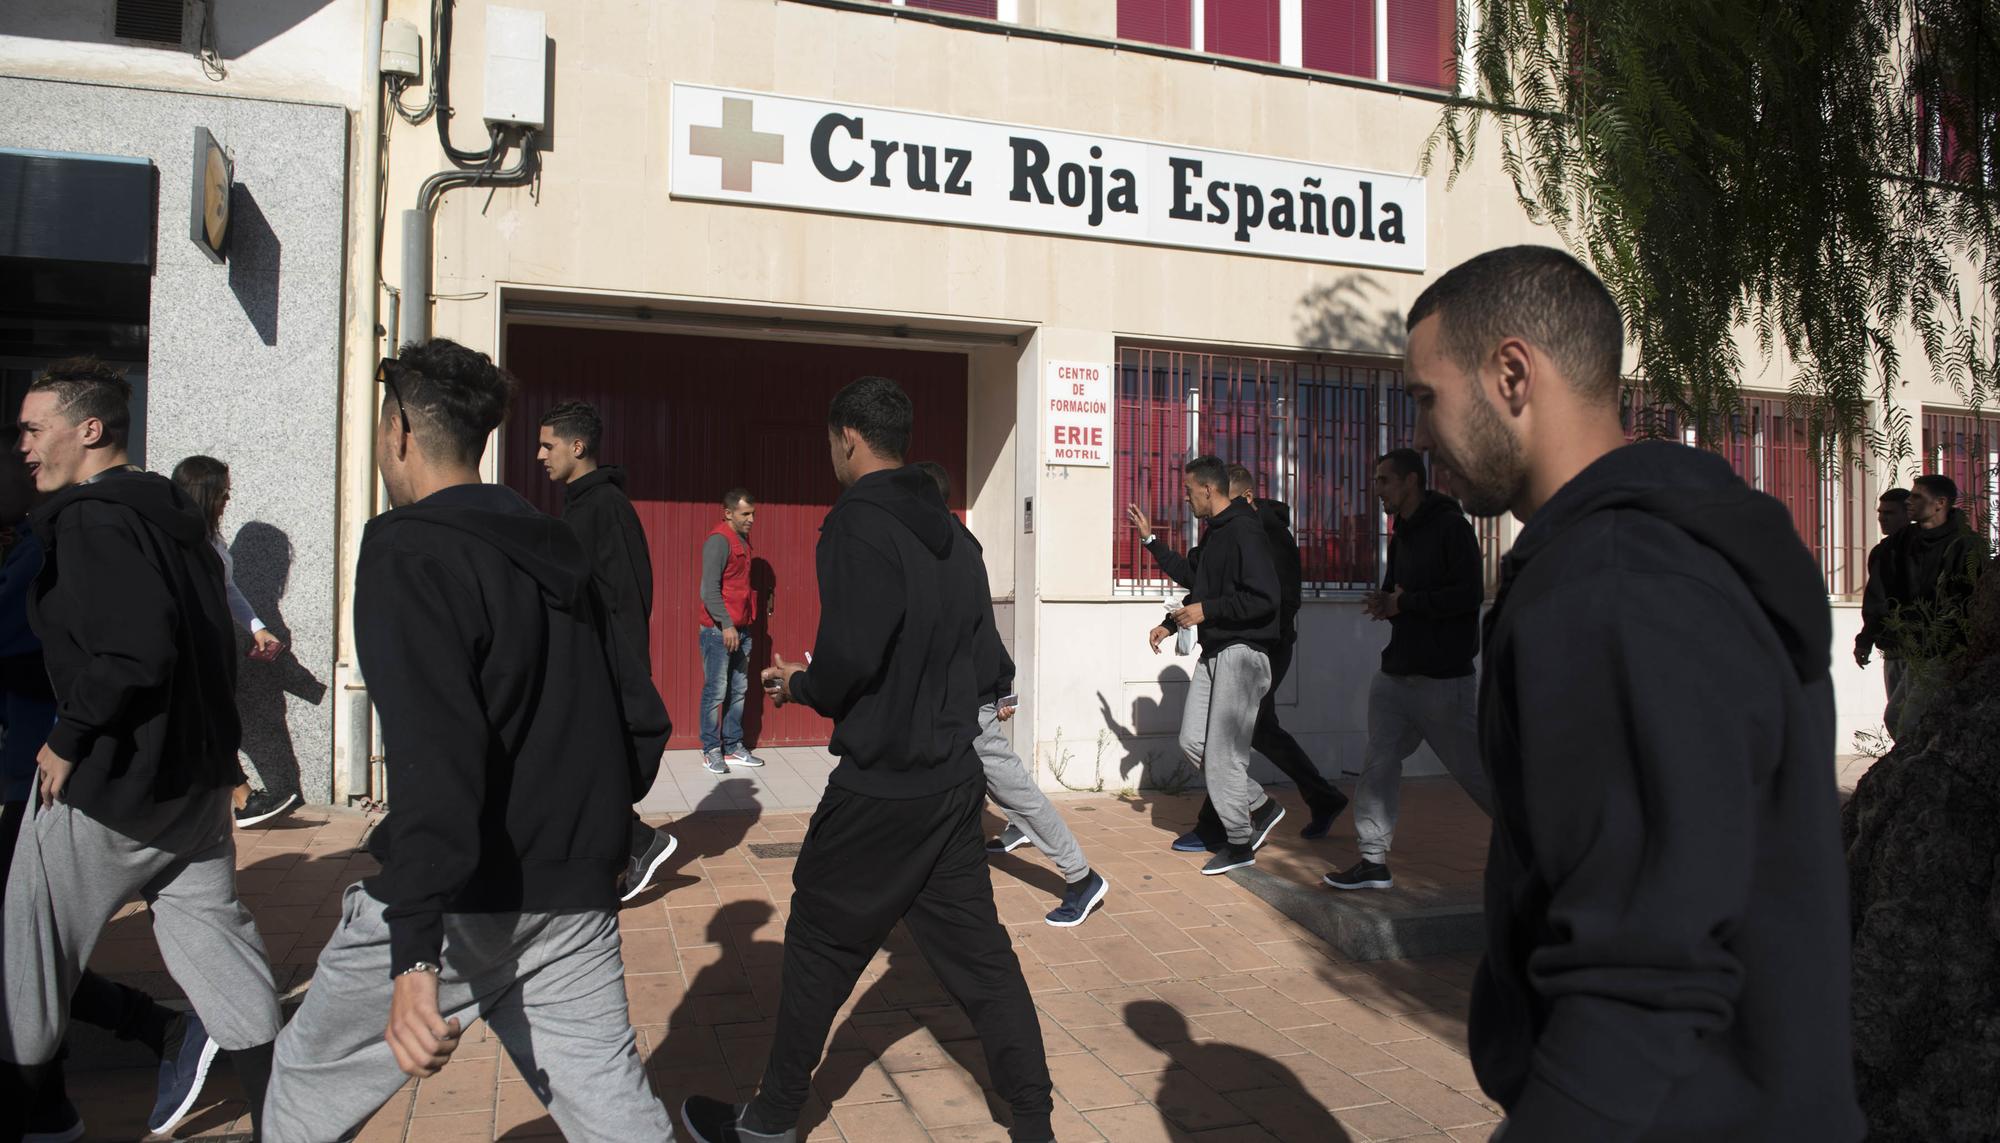 migrantes marroquies cruz roja